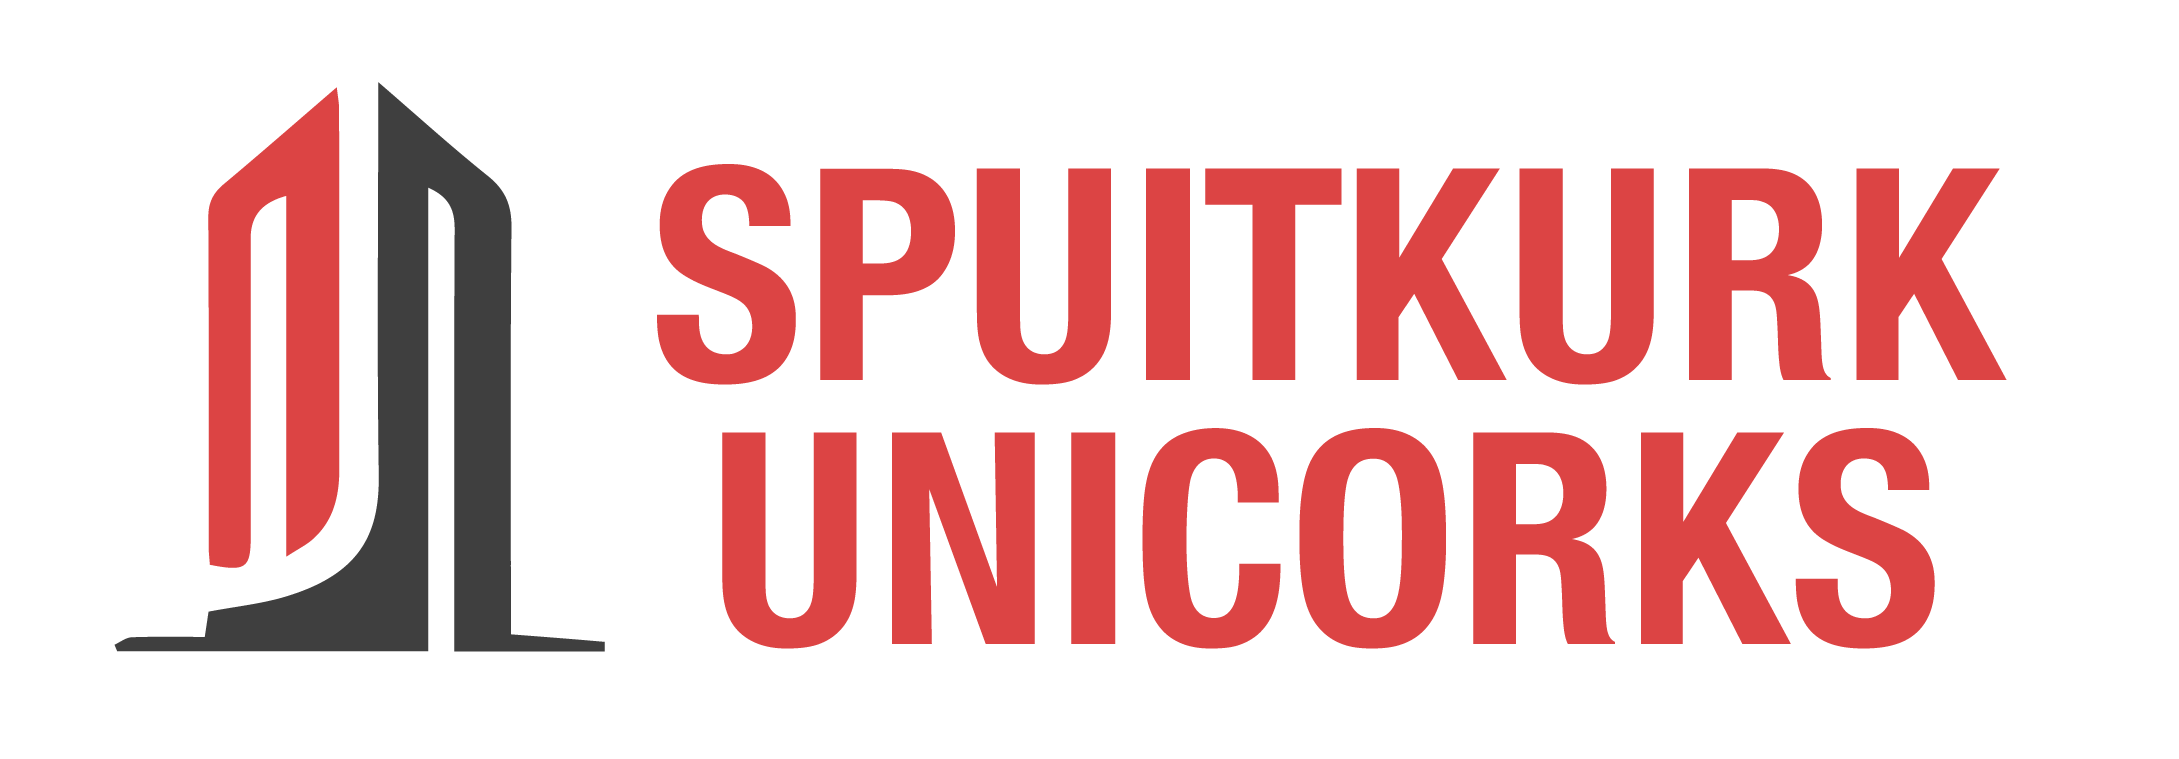 Spuitkurk Unicorks